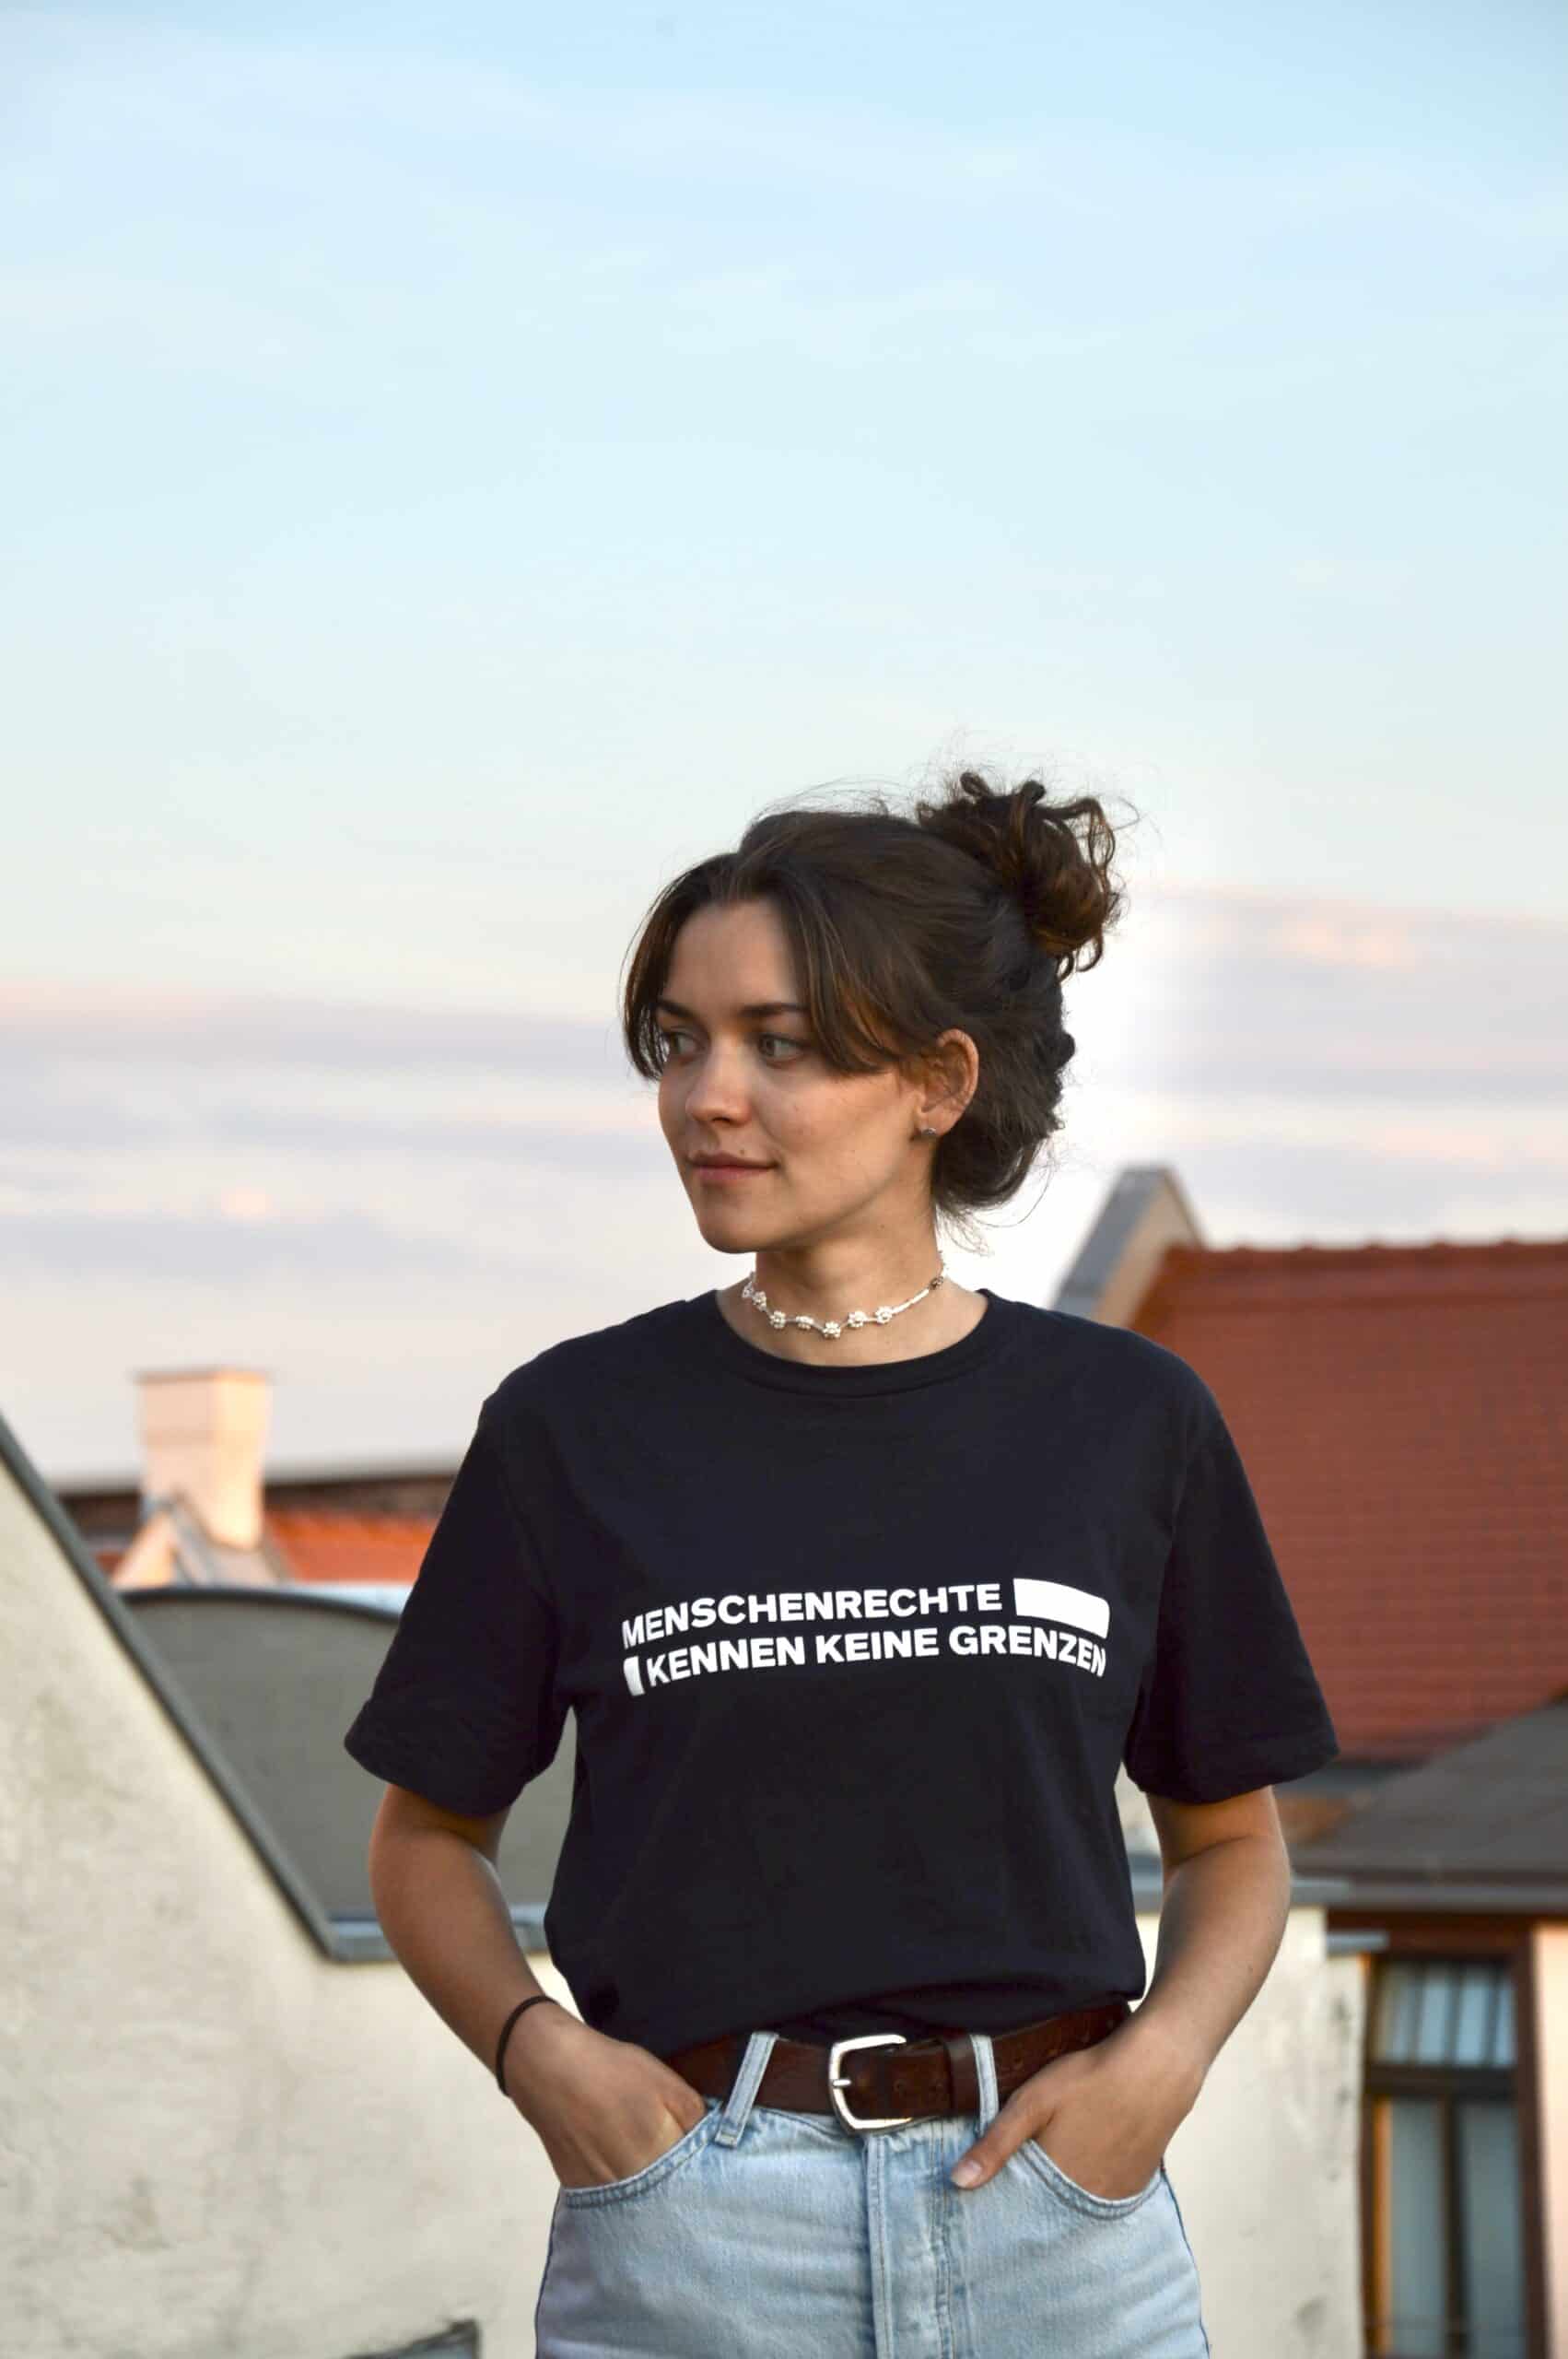 Shirt: Menschenrechte kennen keine Grenzen